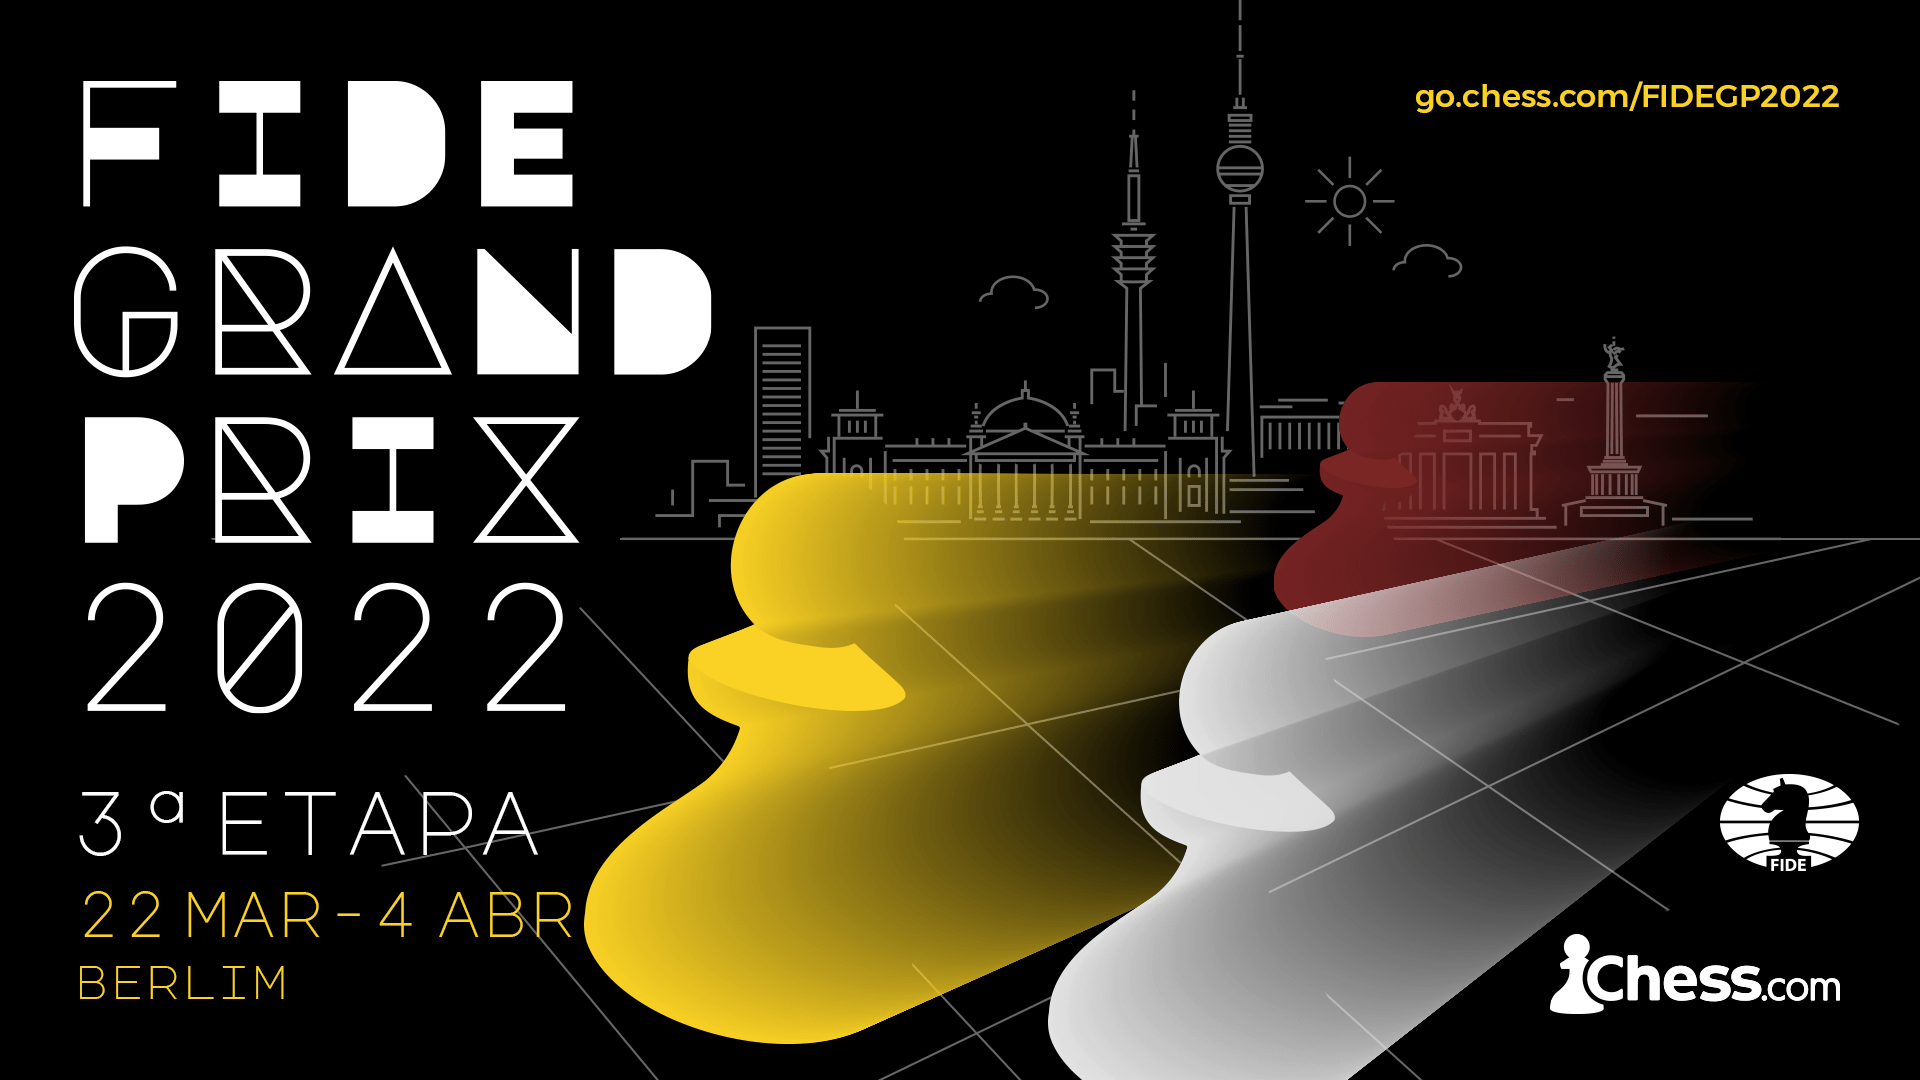 Krikor Vs Andreikin - Copa do Mundo FIDE 2019 - Primeira Partida Rodada1 